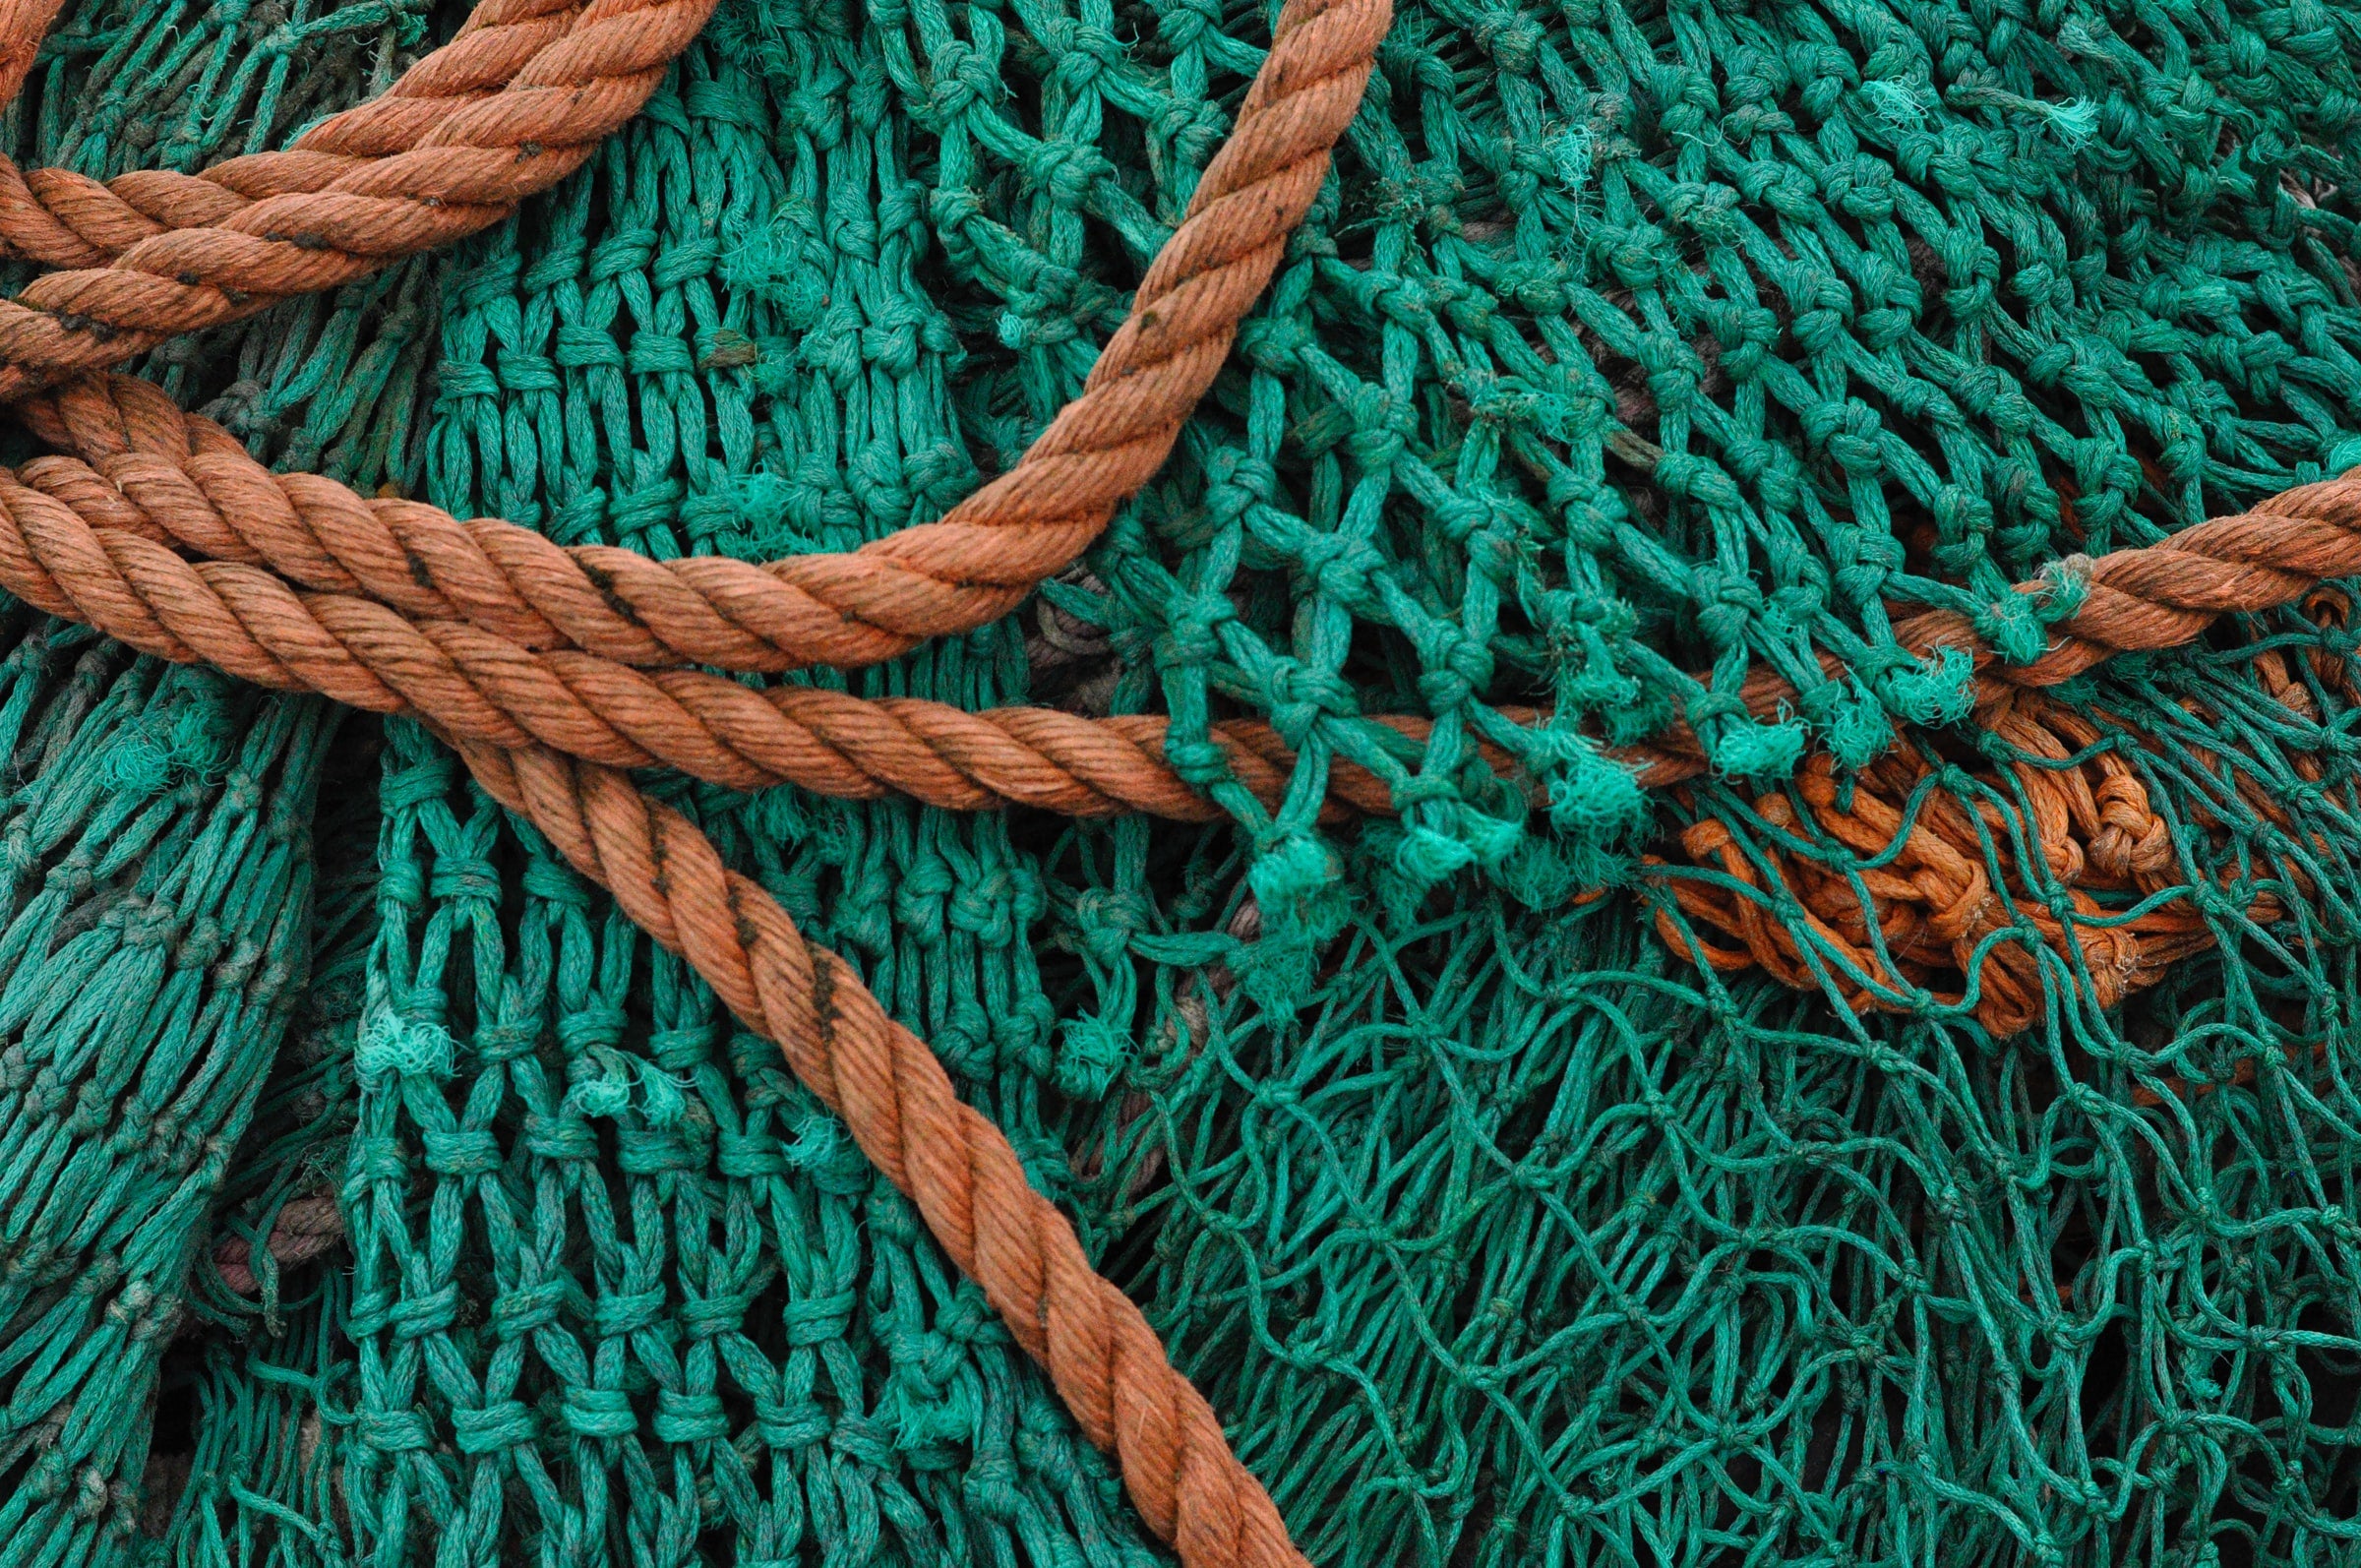 Green fishing nets